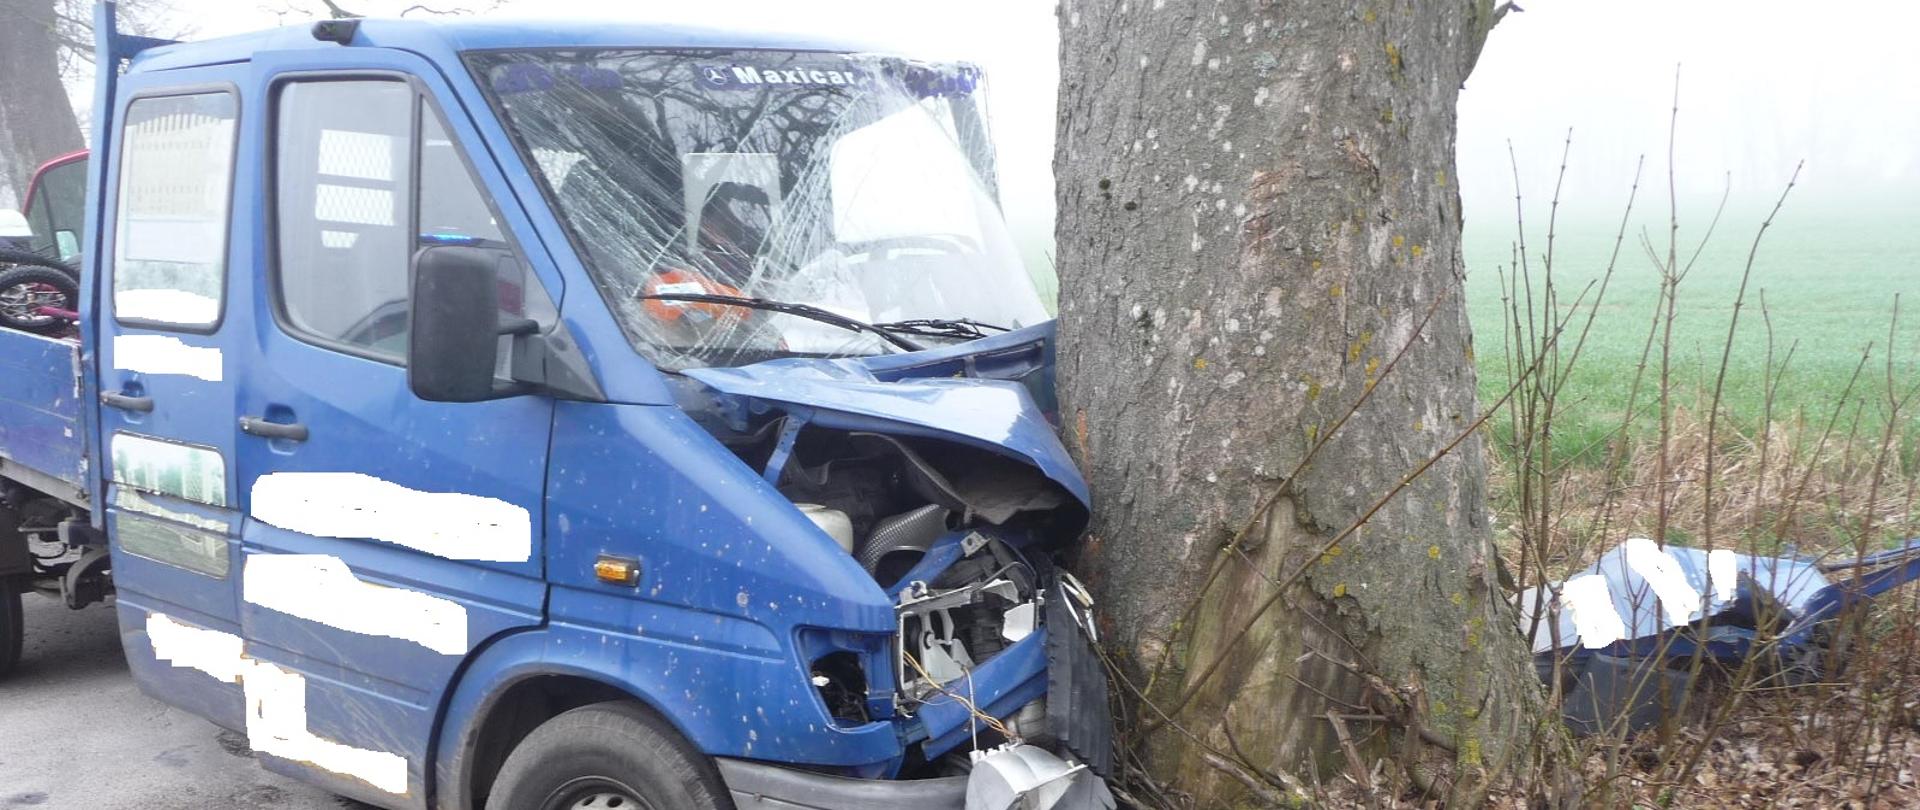 Zdjęcie przedstawia bok pojazdu dostawczego koloru niebieskiego, który uderzył w drzewo. Obok niego znajdują się wycięte drzwi.